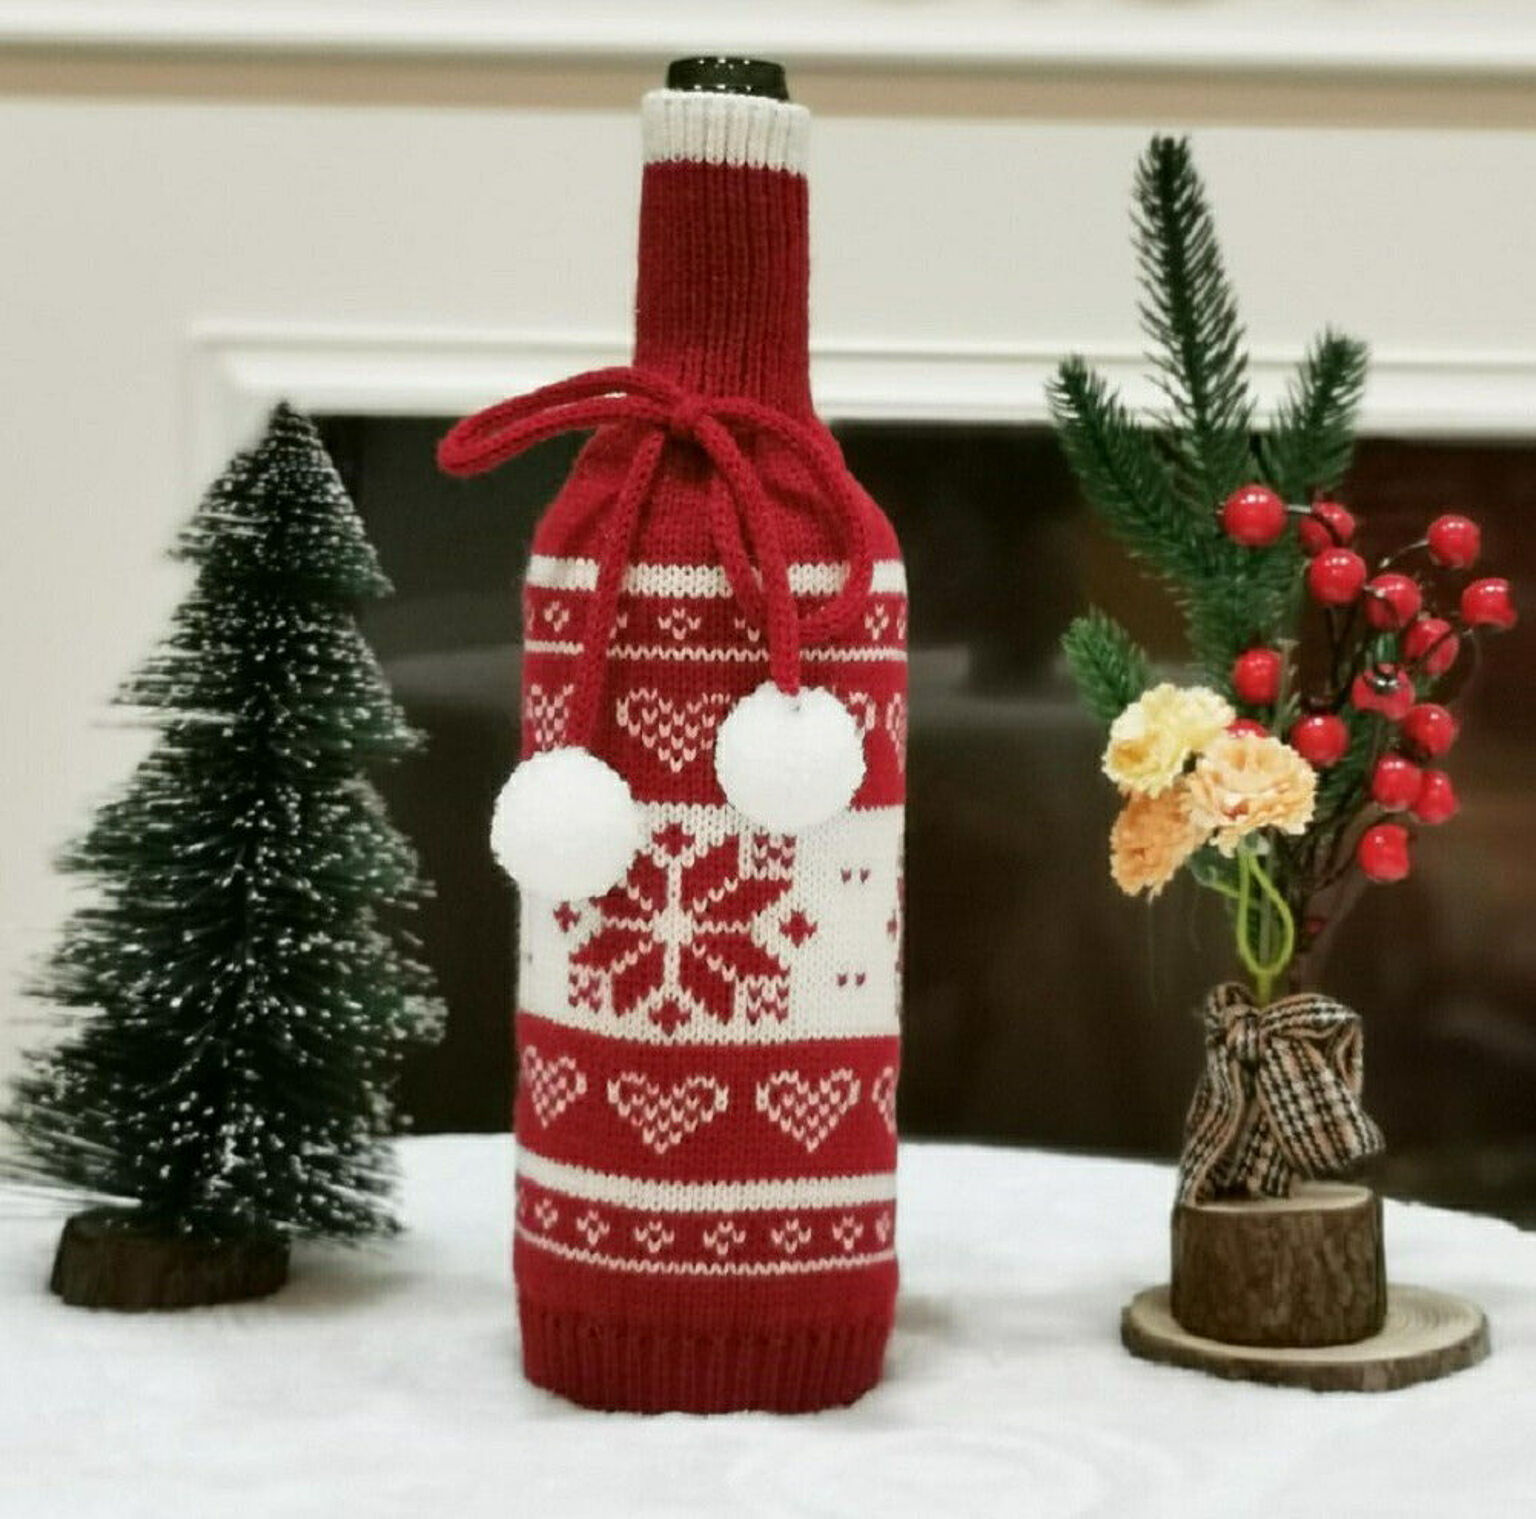 【在庫限り】雑貨 ワインボトルカバー 雪の結晶 ニット ボトルカバー クリスマスデコレーション クリスマスパーティー かわいい デザイン サンタクロース スノーマン ワイン